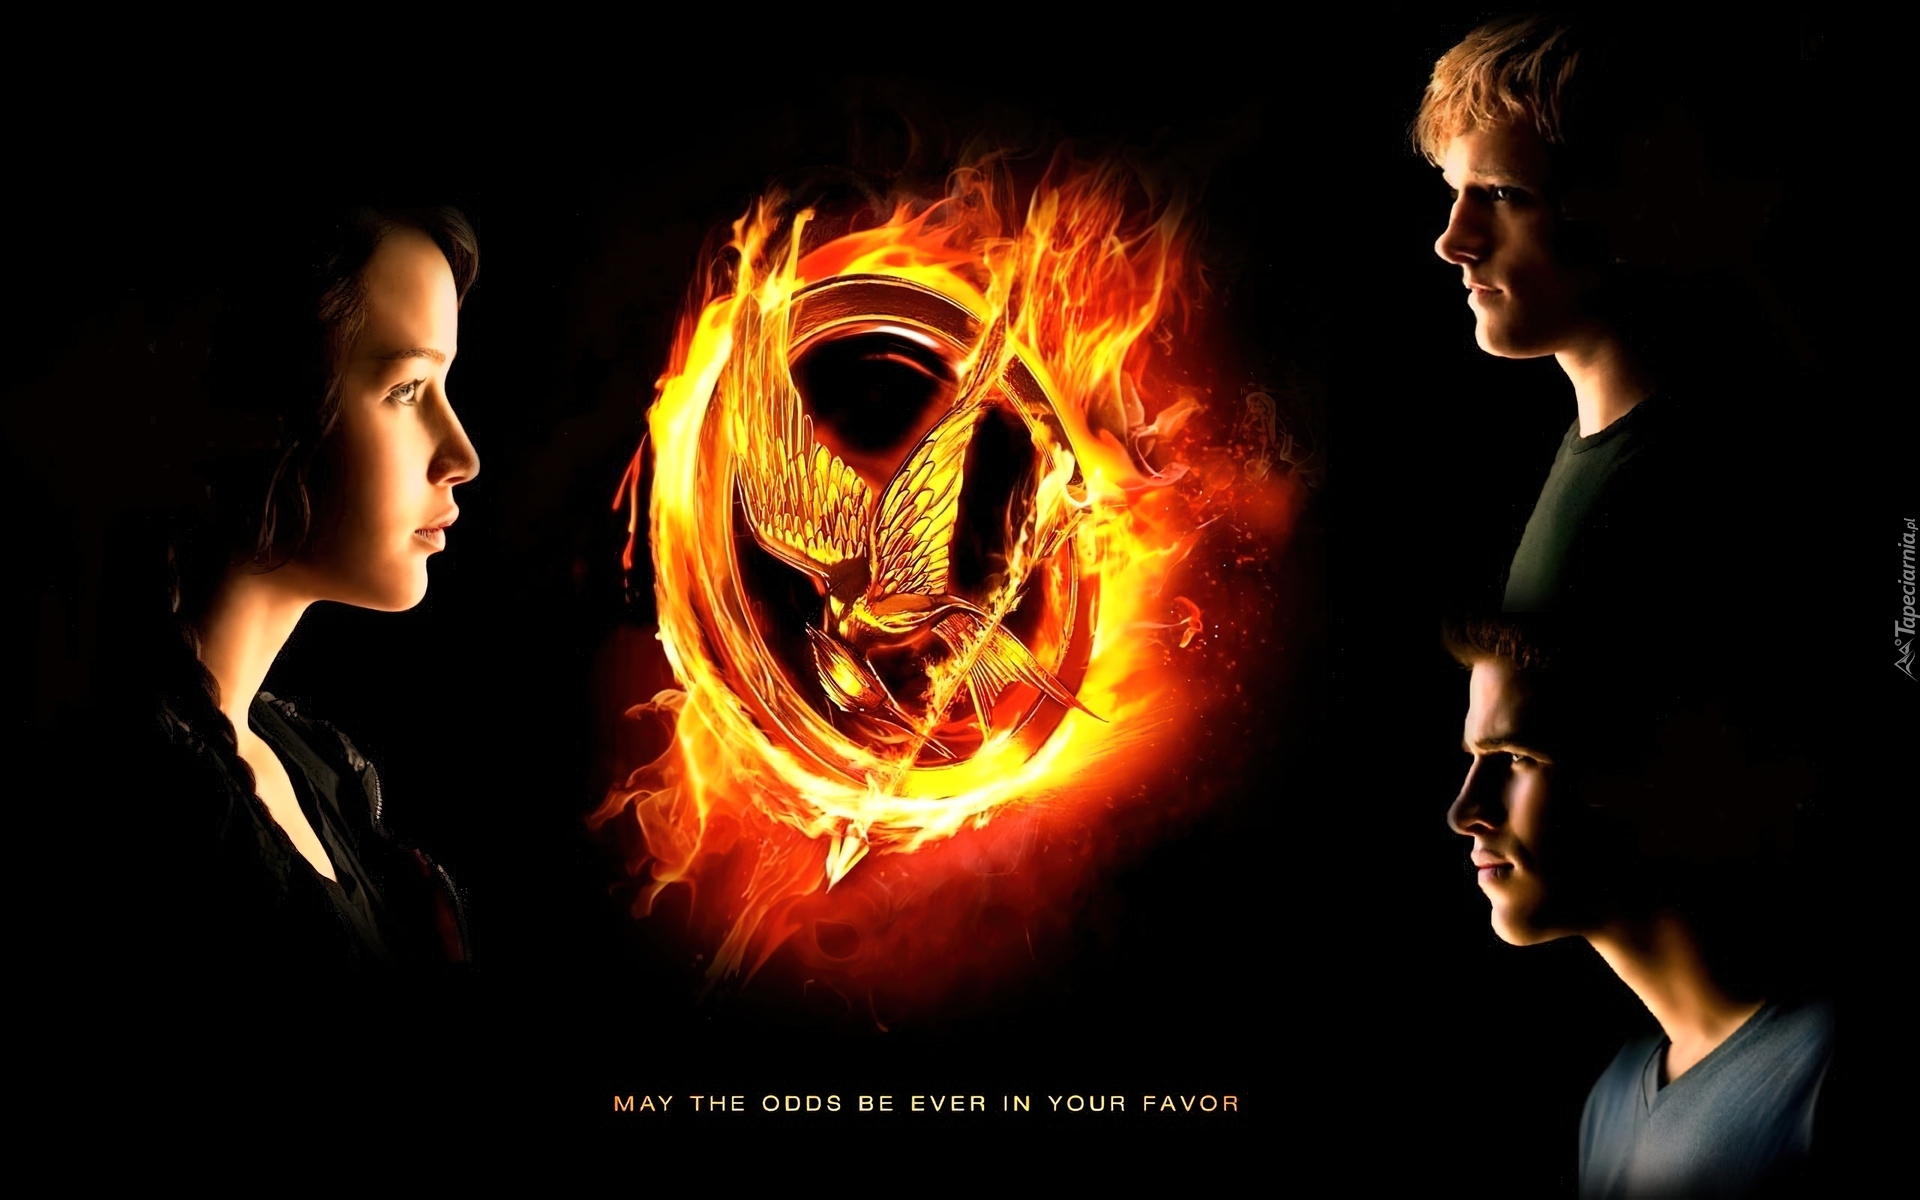 Igrzyska śmierci, Katniss, Peeta, Gale